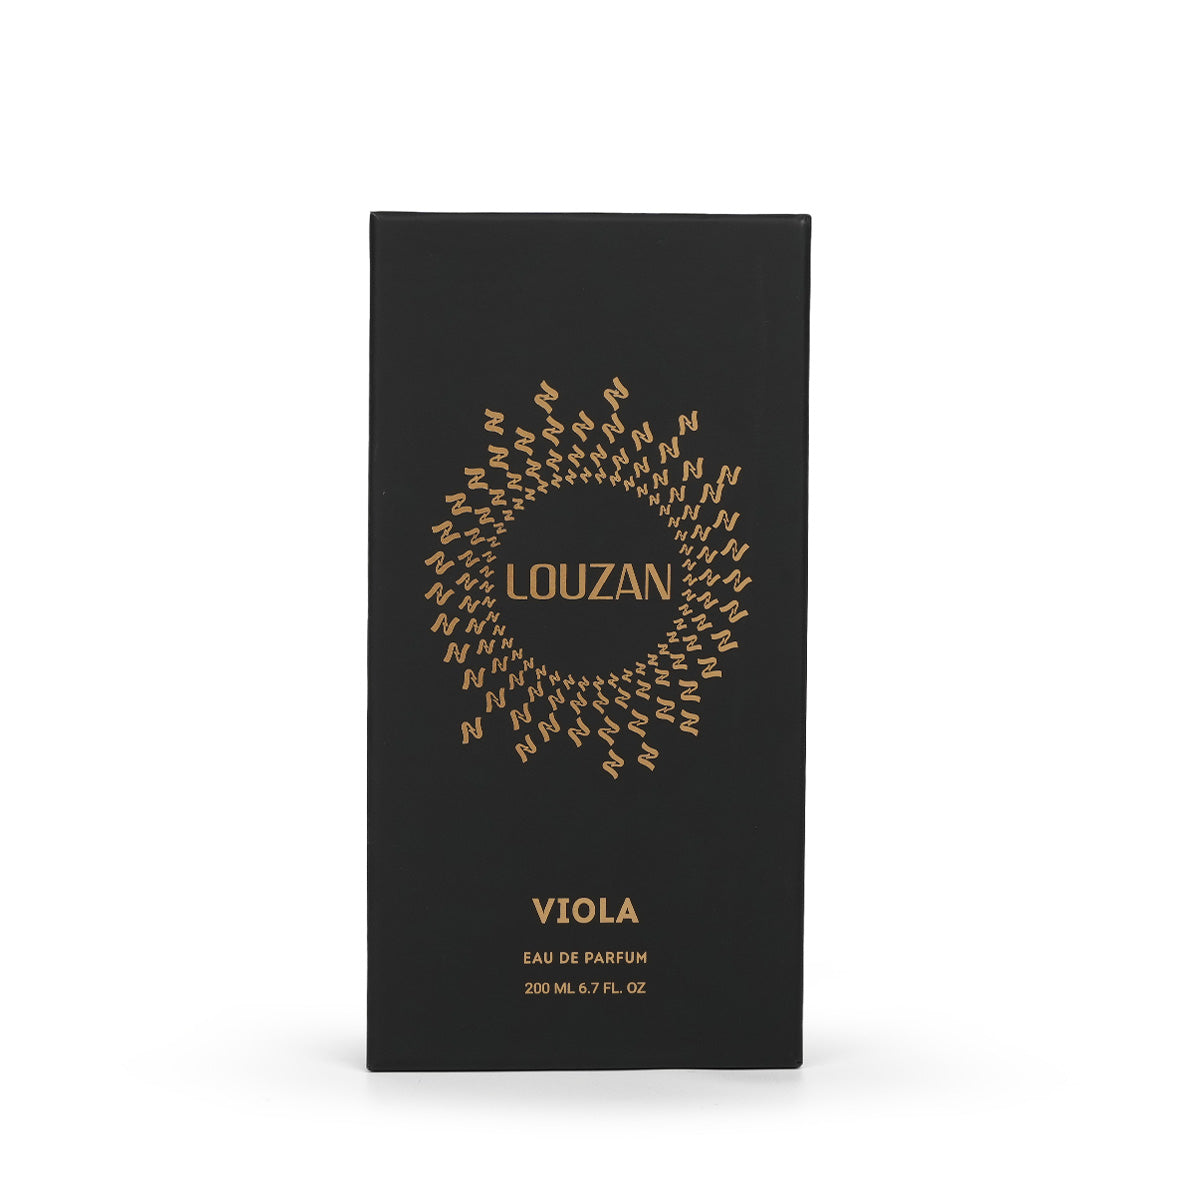 Viola Perfume - 200 ML